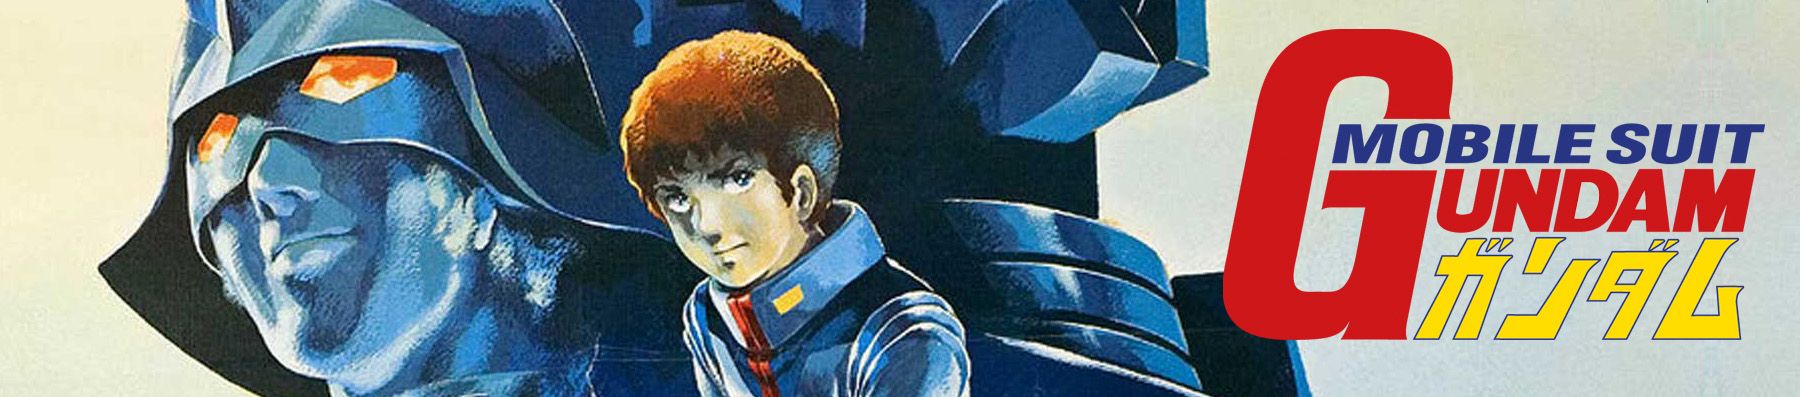 Dossier anime - Gundam : L'histoire des productions - Partie 1 - La première série et ses films